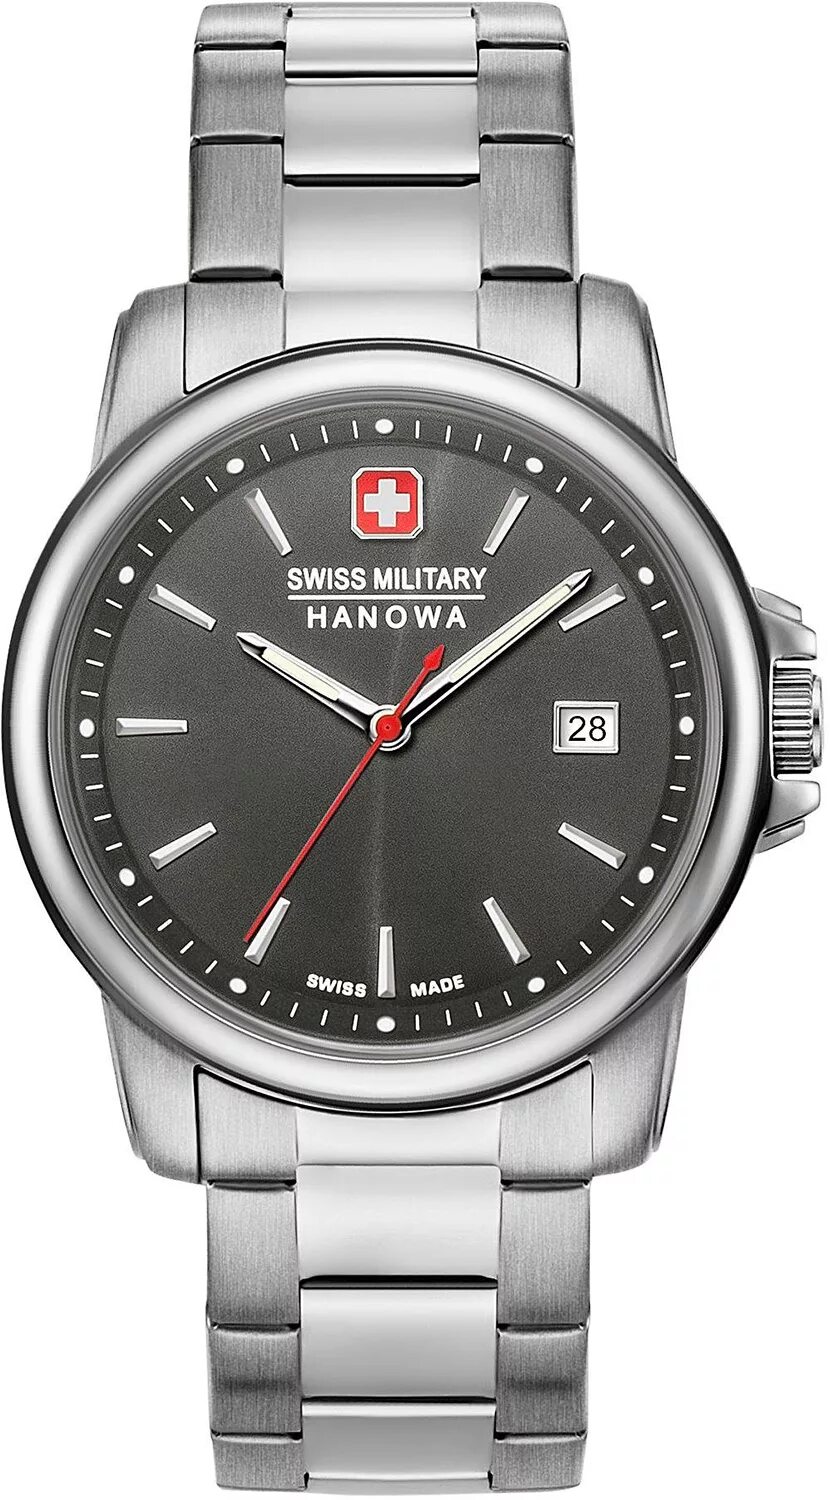 Swiss Military Hanowa 06-5330. Swiss Military Hanowa 06-5230.7.04.007. Swiss Military Hanowa 06-5230.7.04.009 наручные часы. Swiss Military Hanowa 5 ATM Sapphire.